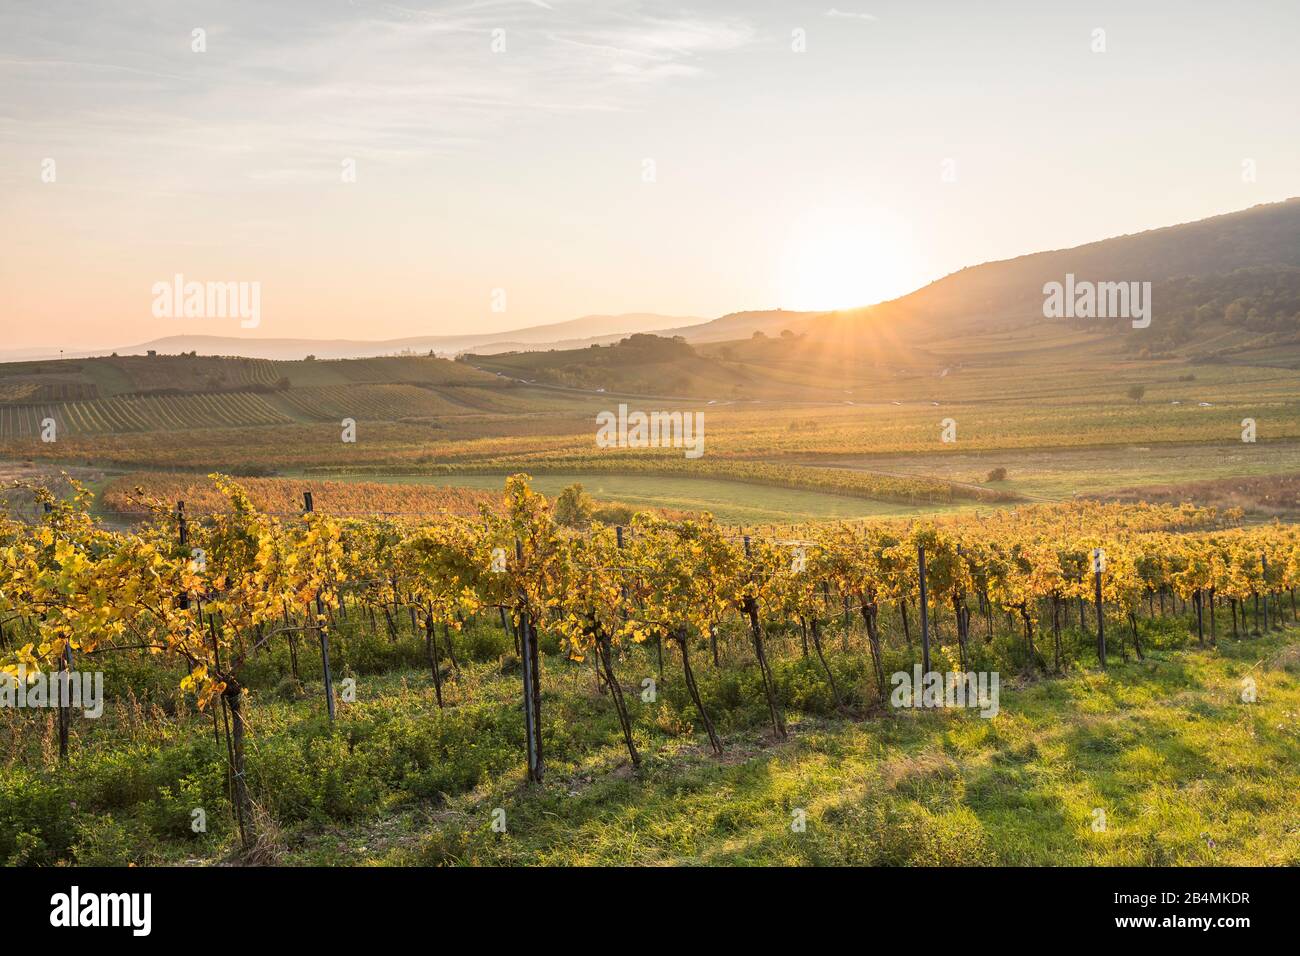 Sonnenuntergang über dem Weinanbaugebiet zwischen Gumpoldskirchen und Pfaffstätten, Niederösterreich, Österreich Foto Stock